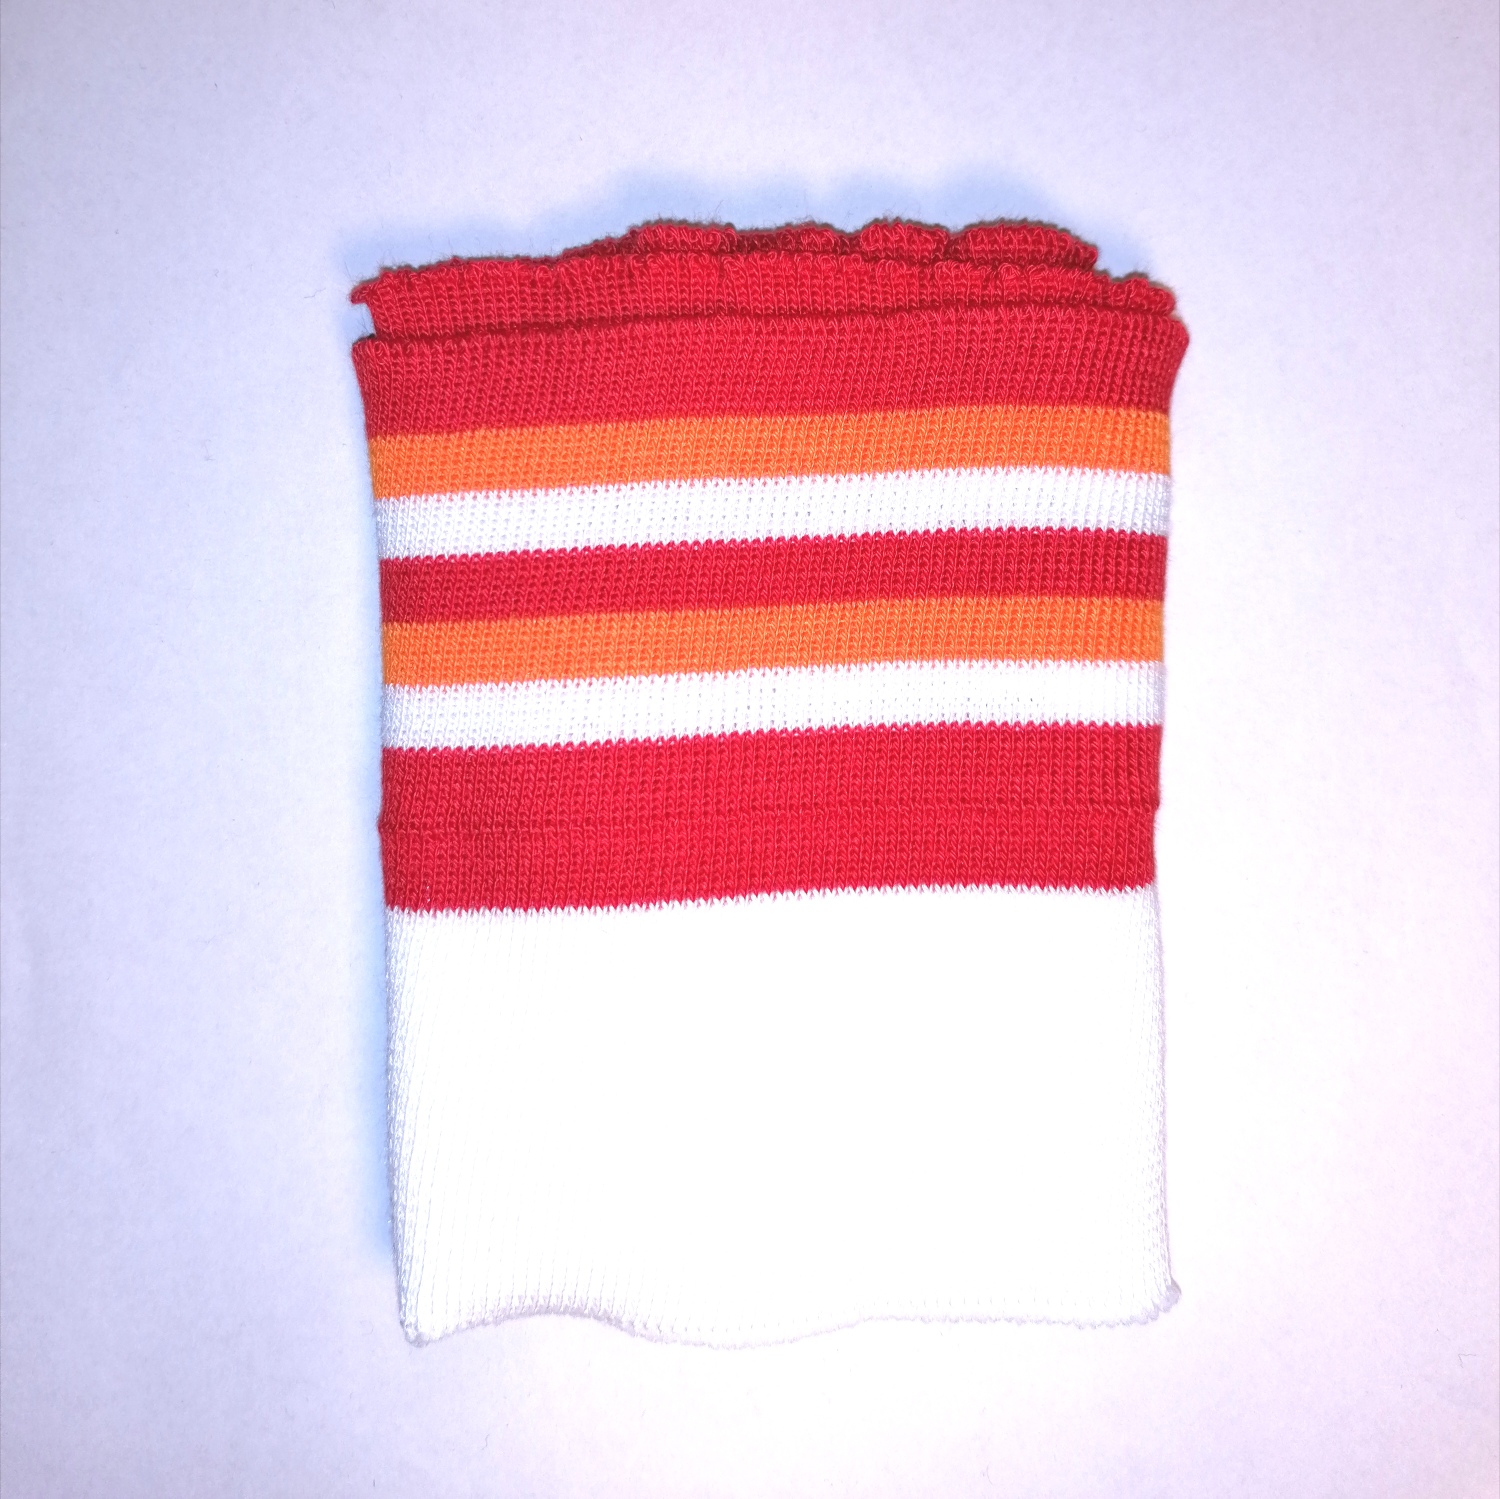 Witte cuff (boordstof) met oranje en rode strepen